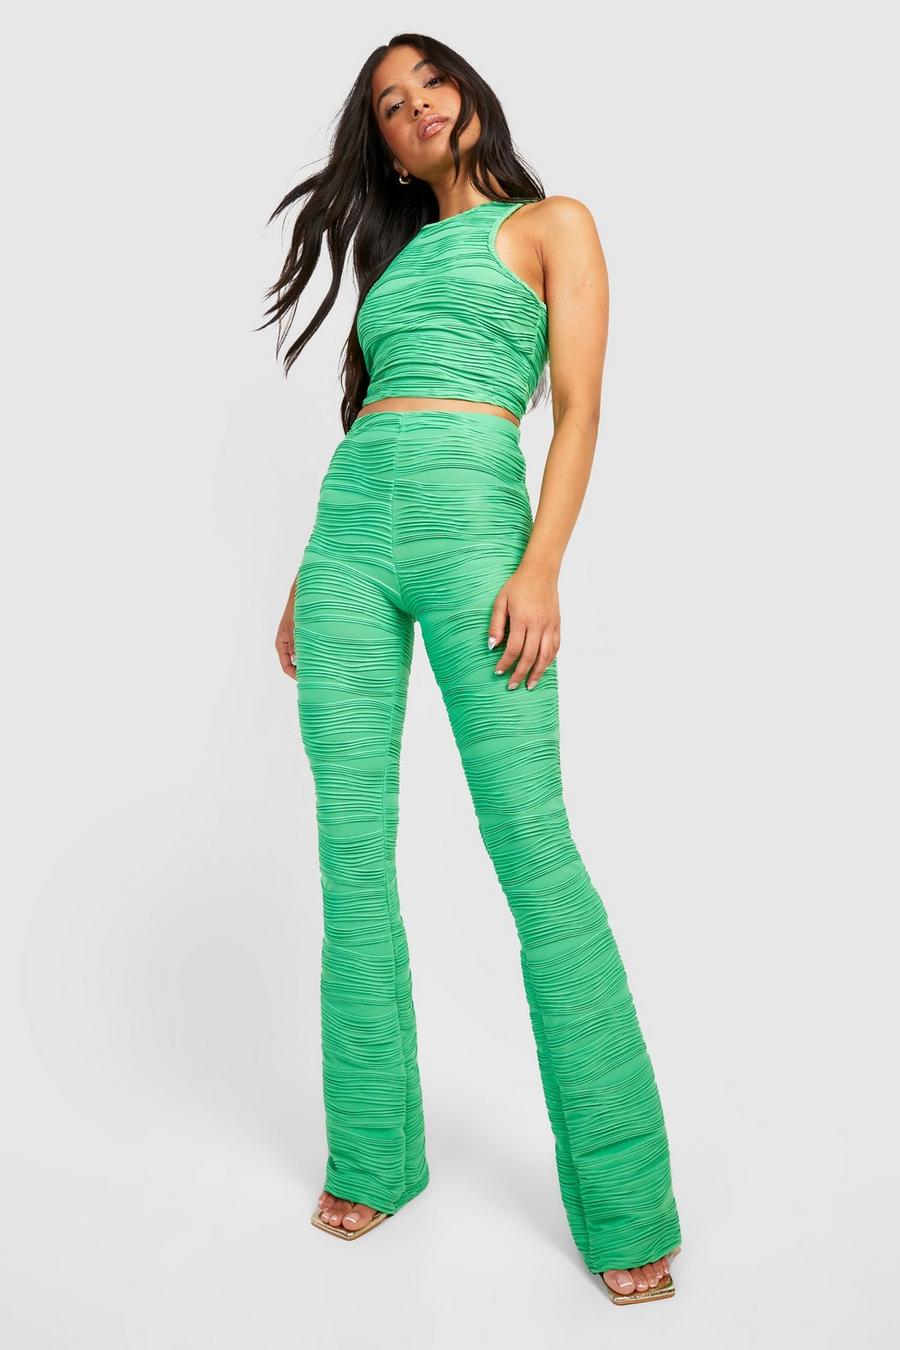 ירוק מכנסי ריב מתרחבים עם טקסטורה, למידות פטיט 